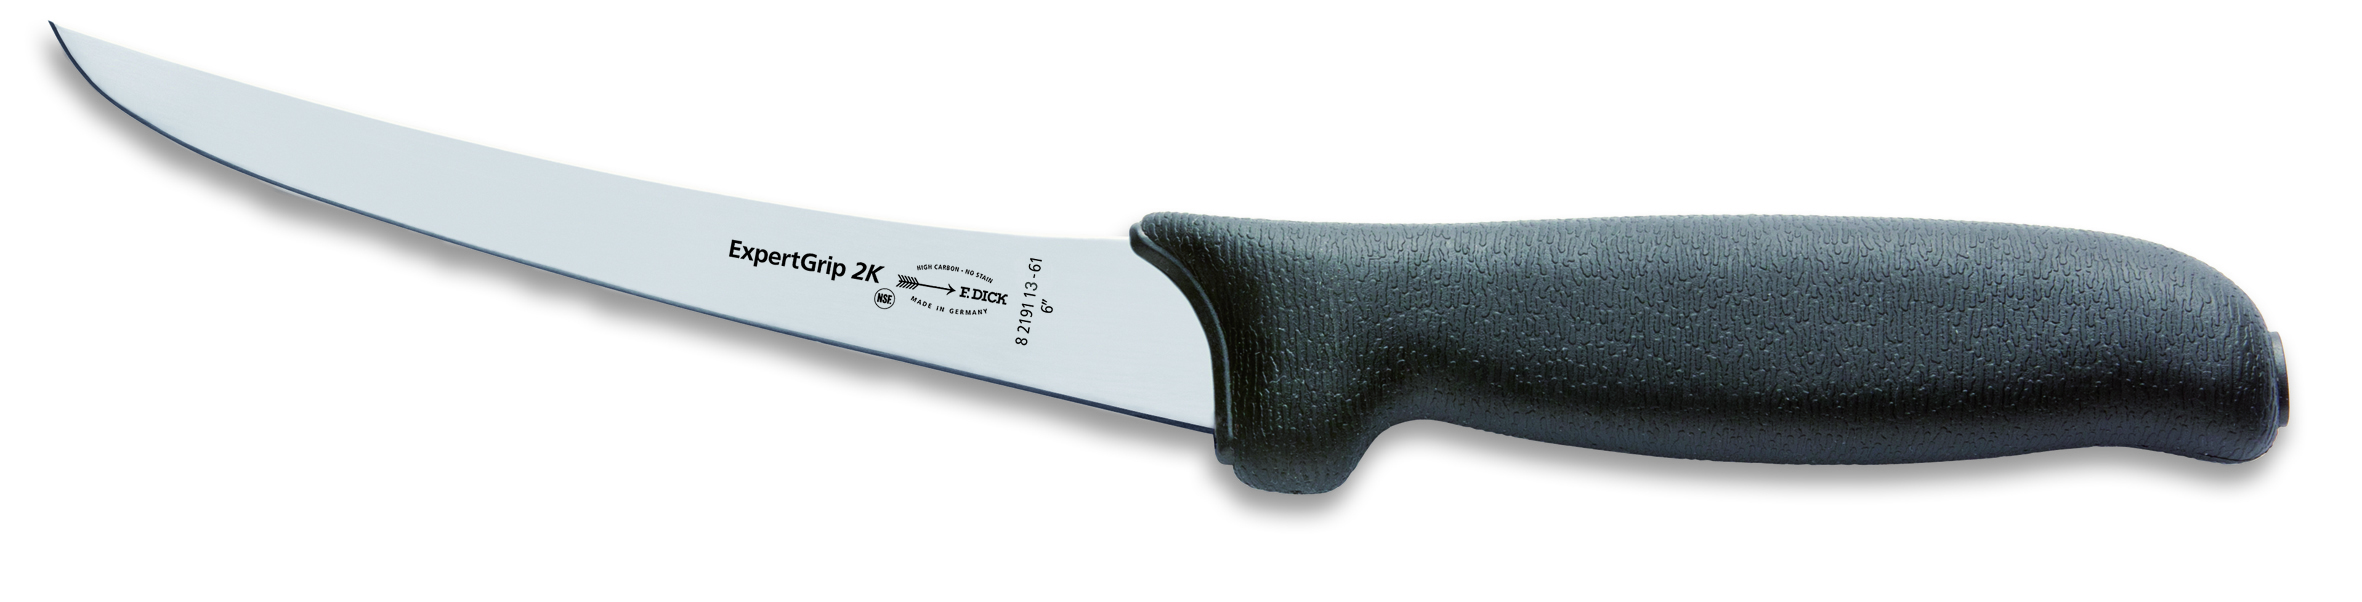 Vykosťovací nůž Dick neohebný v délce 13 cm ze série ExpertGrip, černý